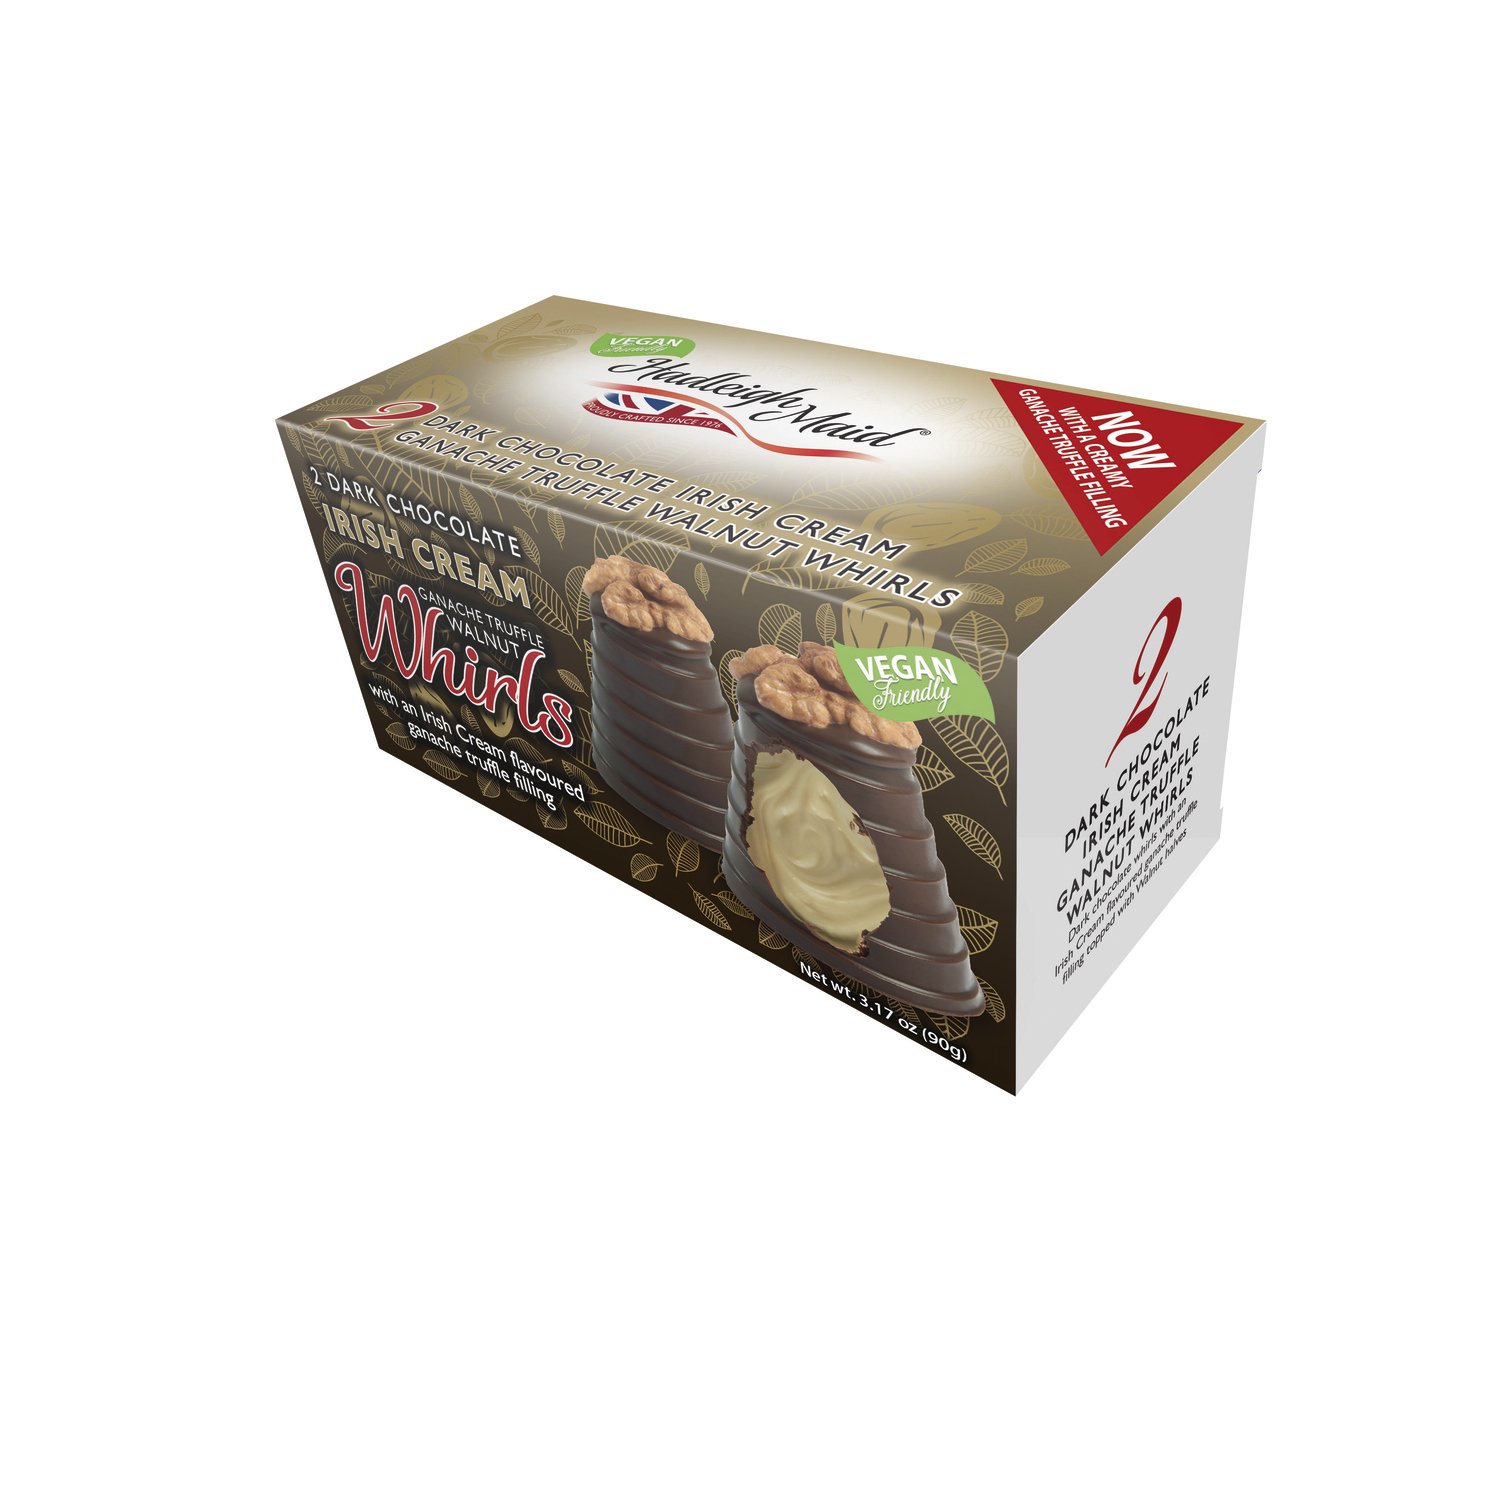 Vegan friendly dark choc Irish cream ganache walnut whirls twin pack - 12x90g